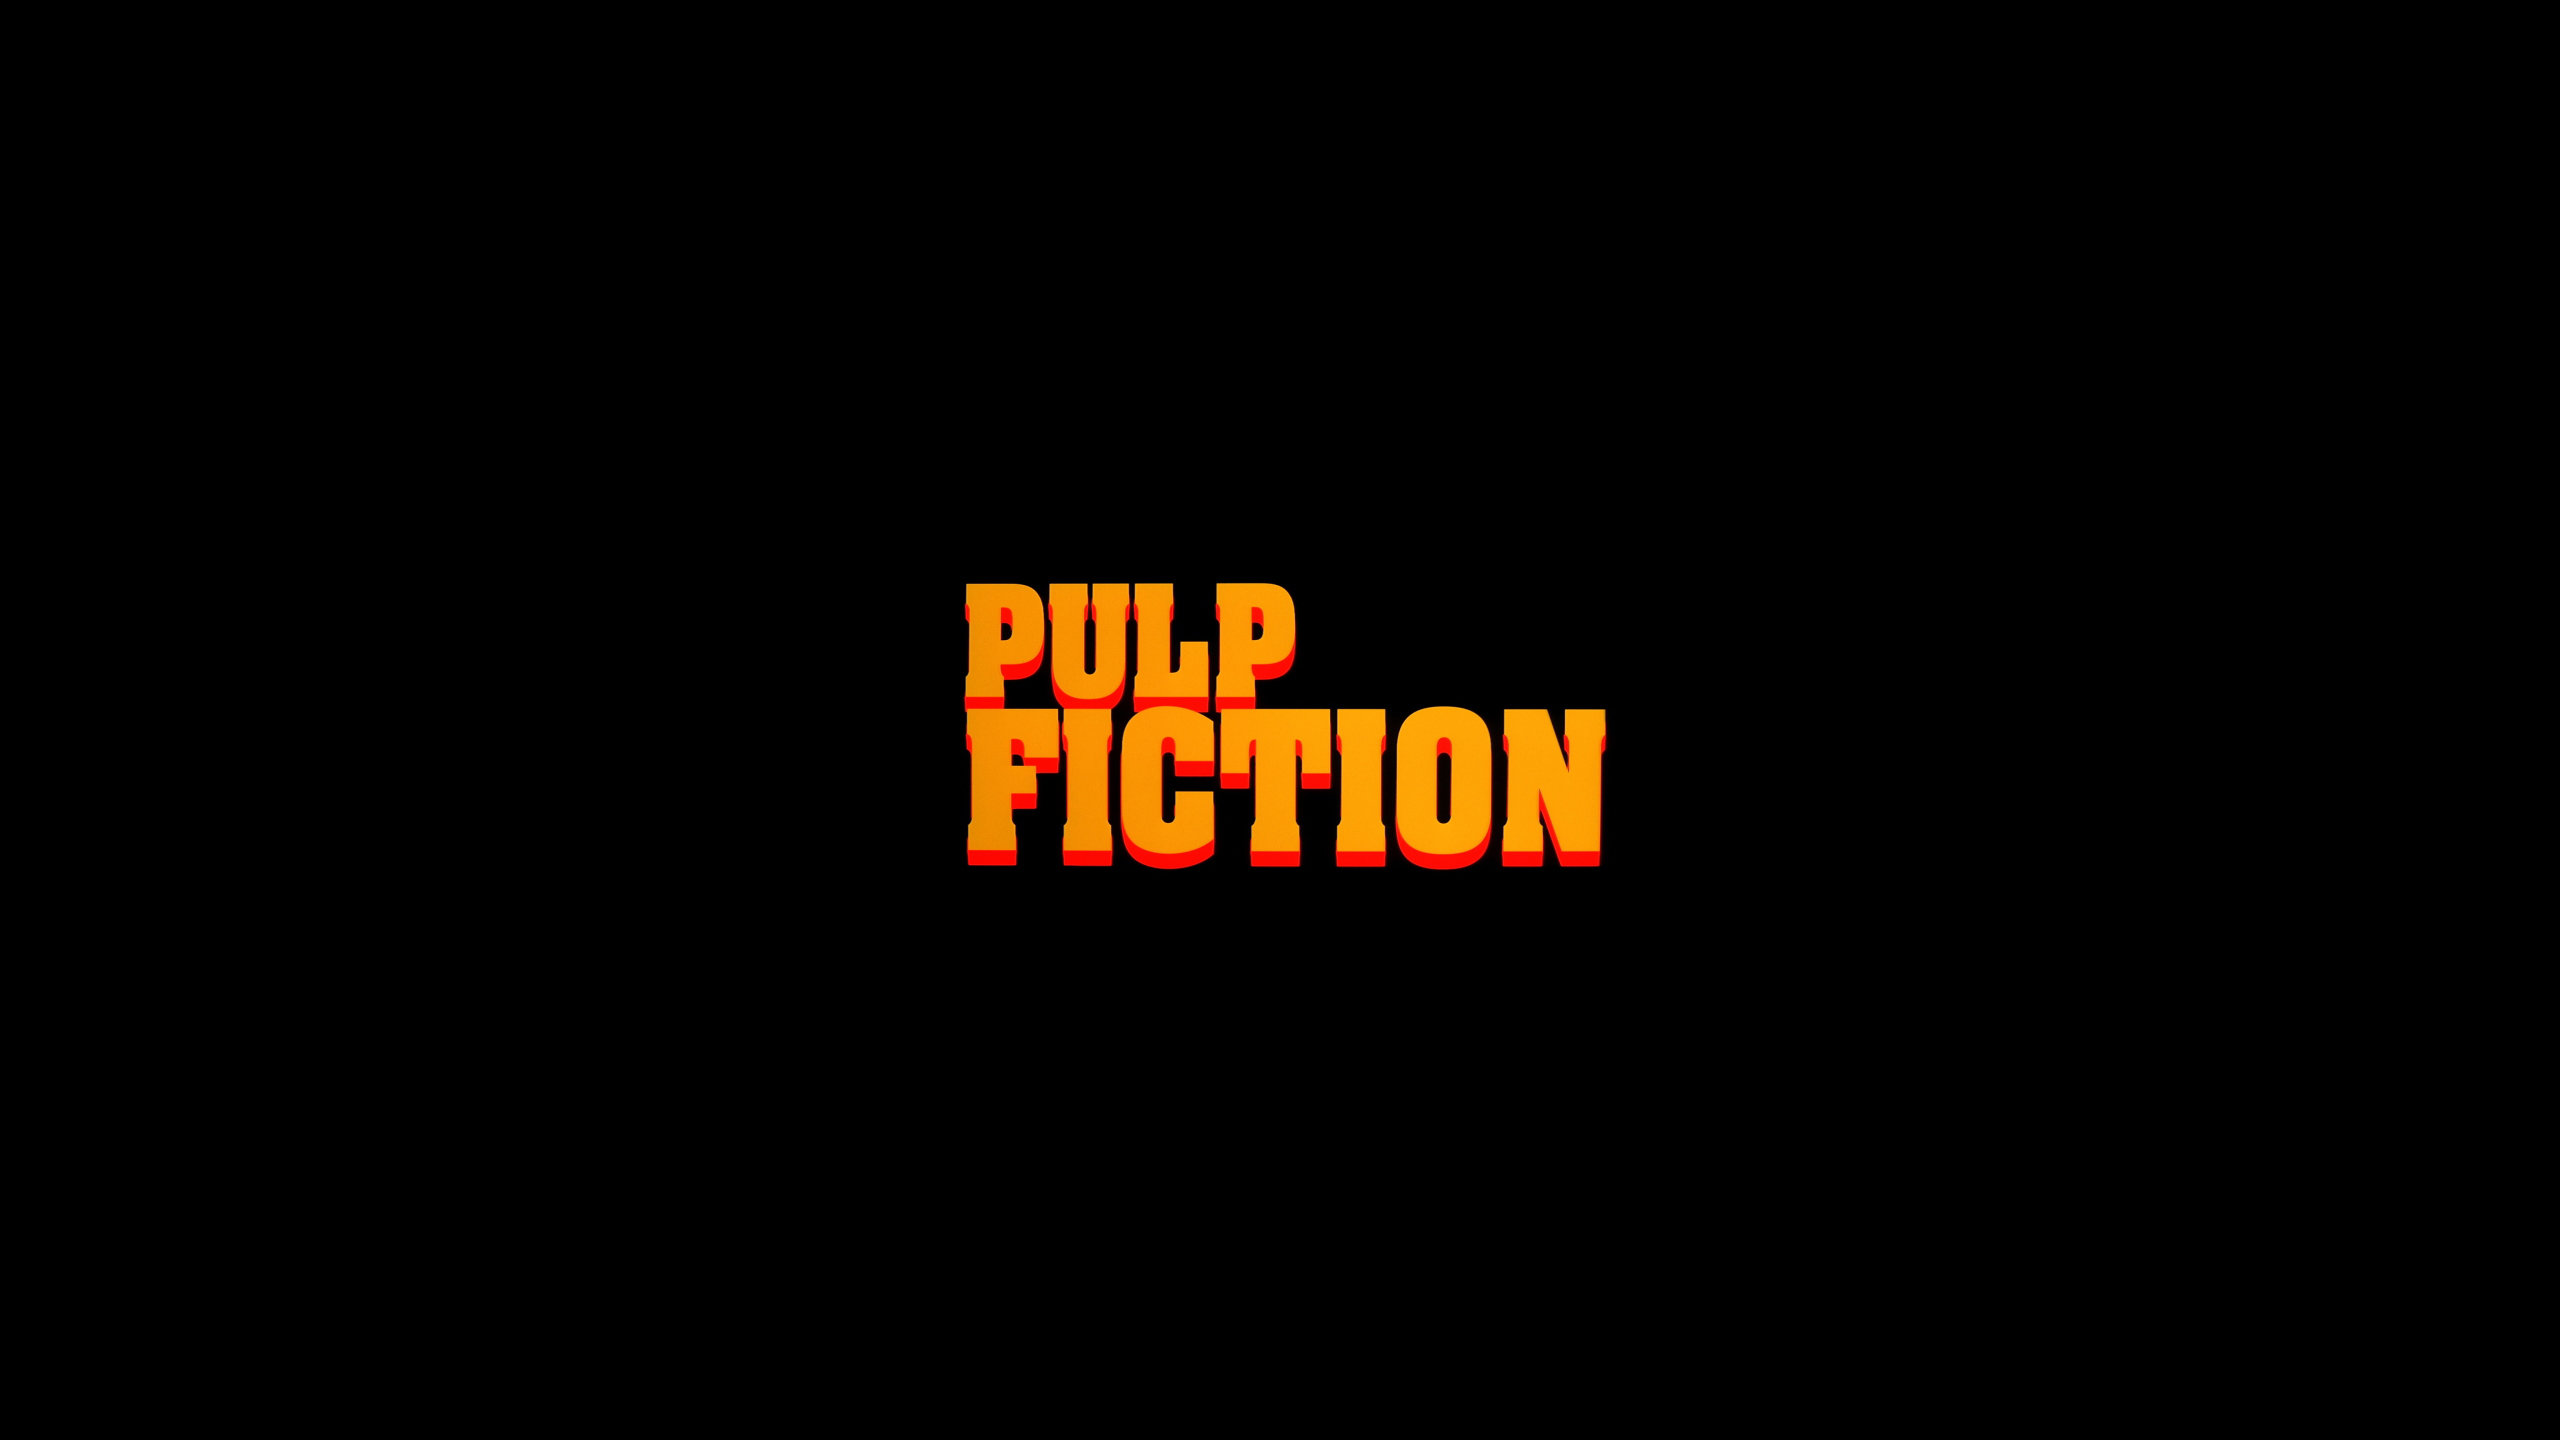 Best Pulp Fiction wallpaper ID:158112 for High Resolution hd 2560x1440 desktop